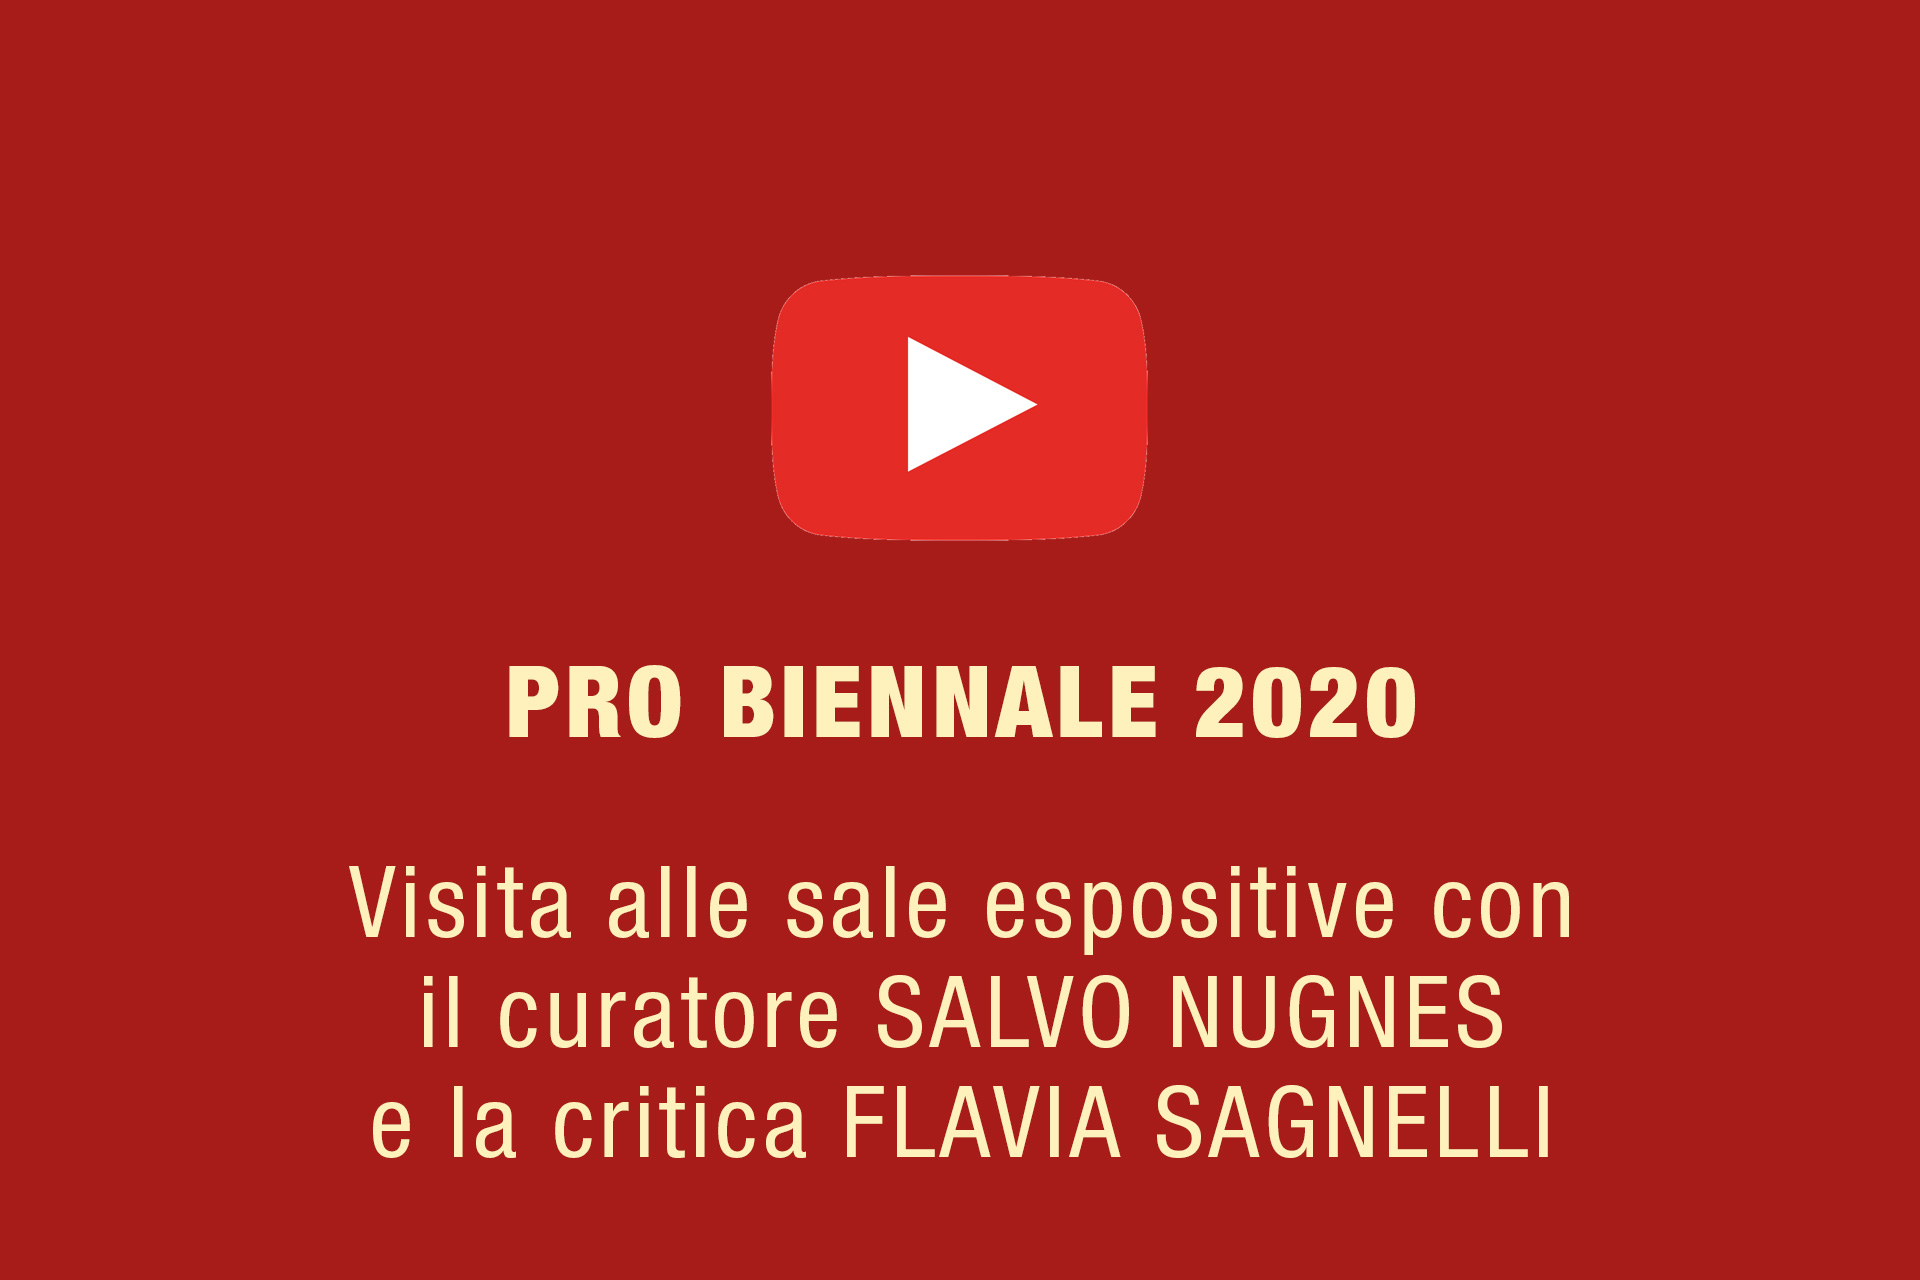 Pro Biennale 2020